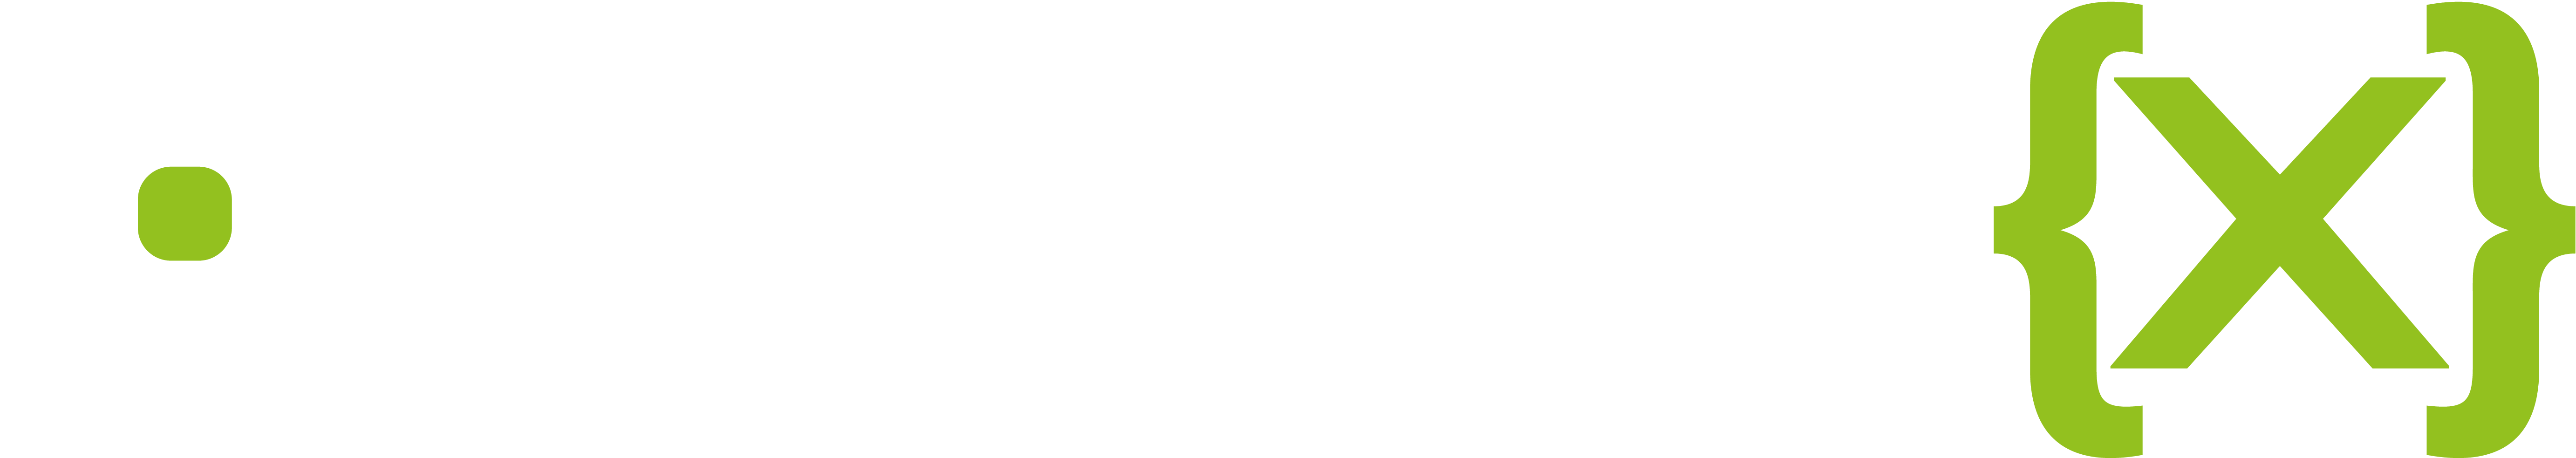 CREATIONX Internetagentur logo